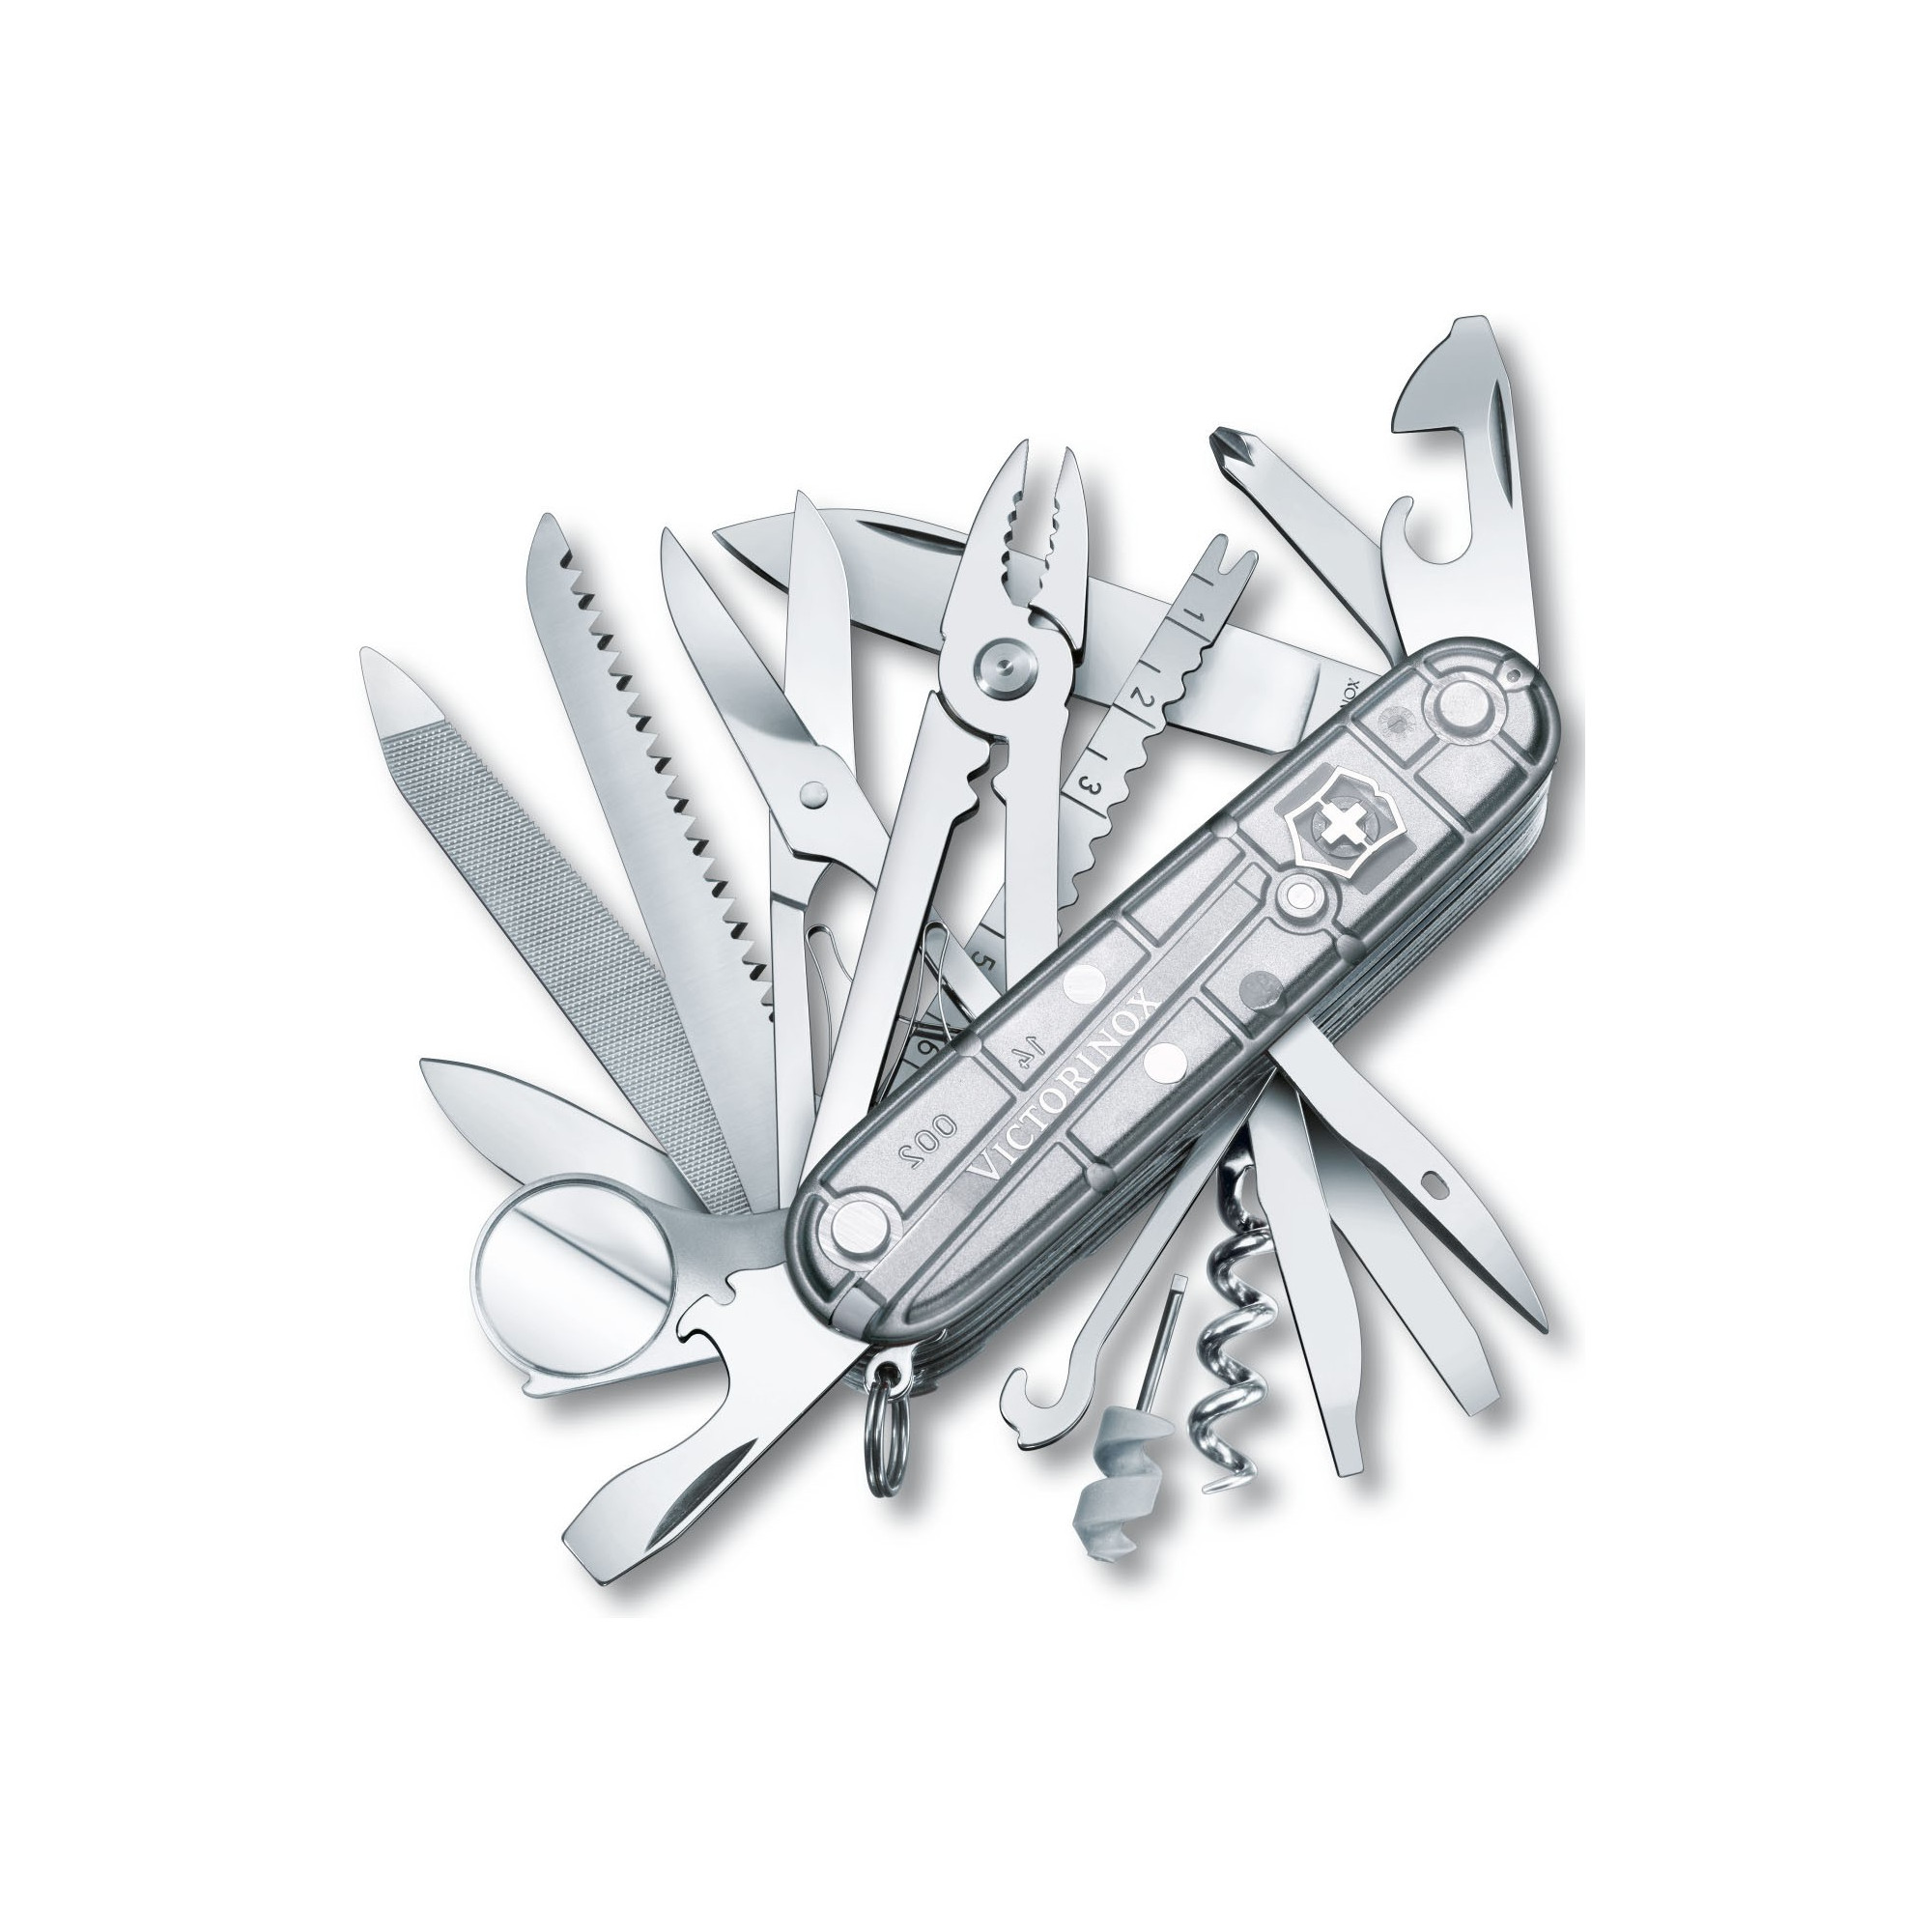 Multi-function knife Swisschamp Silvertech